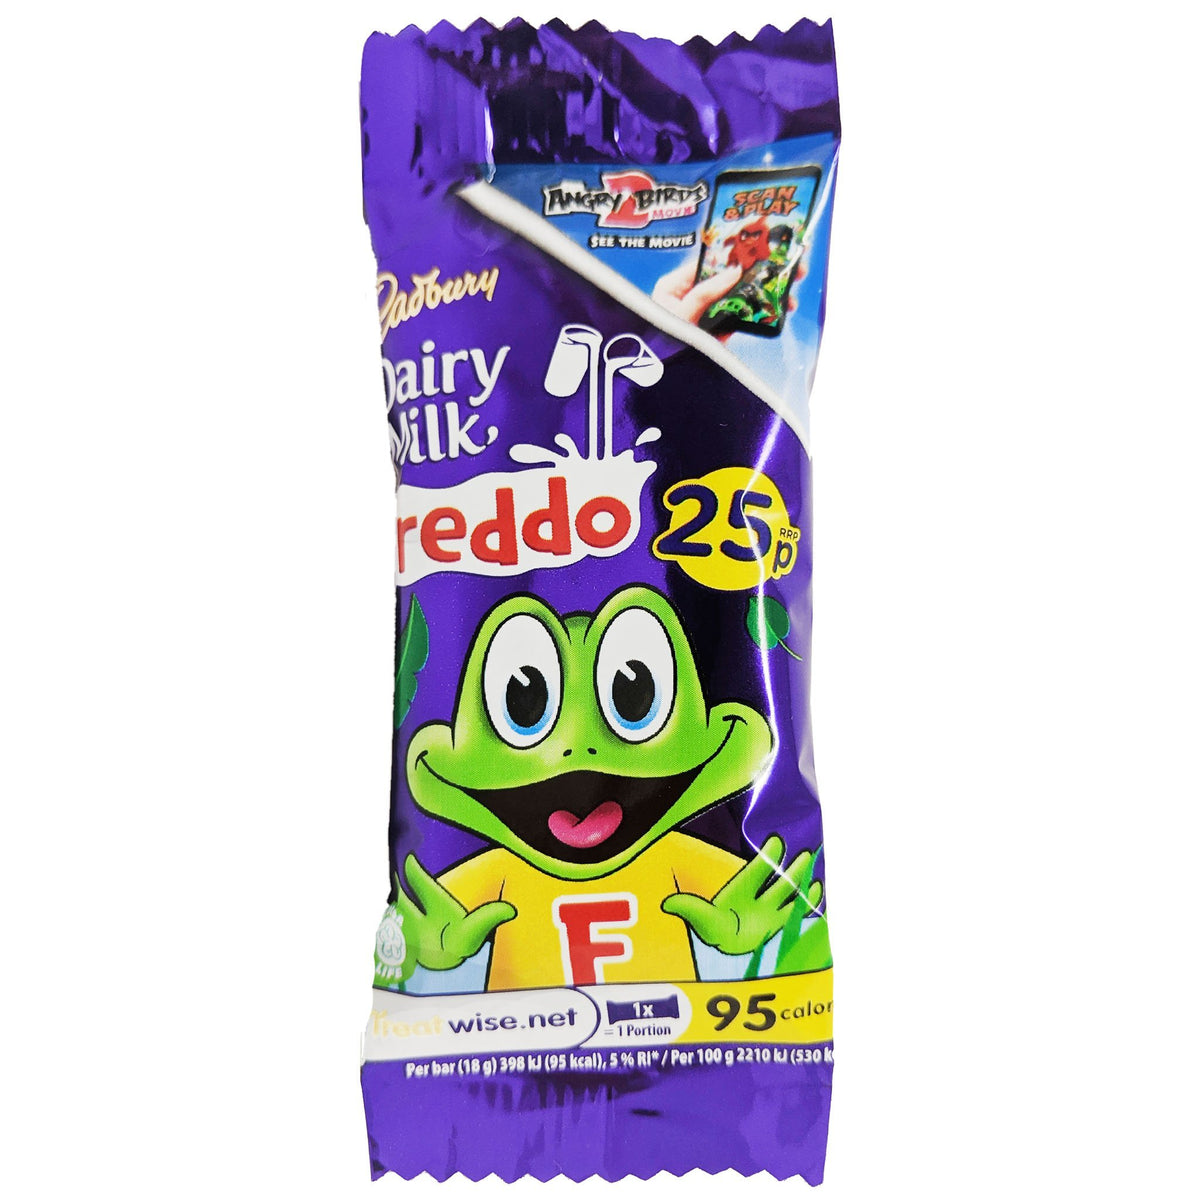 Cadbury Flake 4 Pack (4 x 20g)